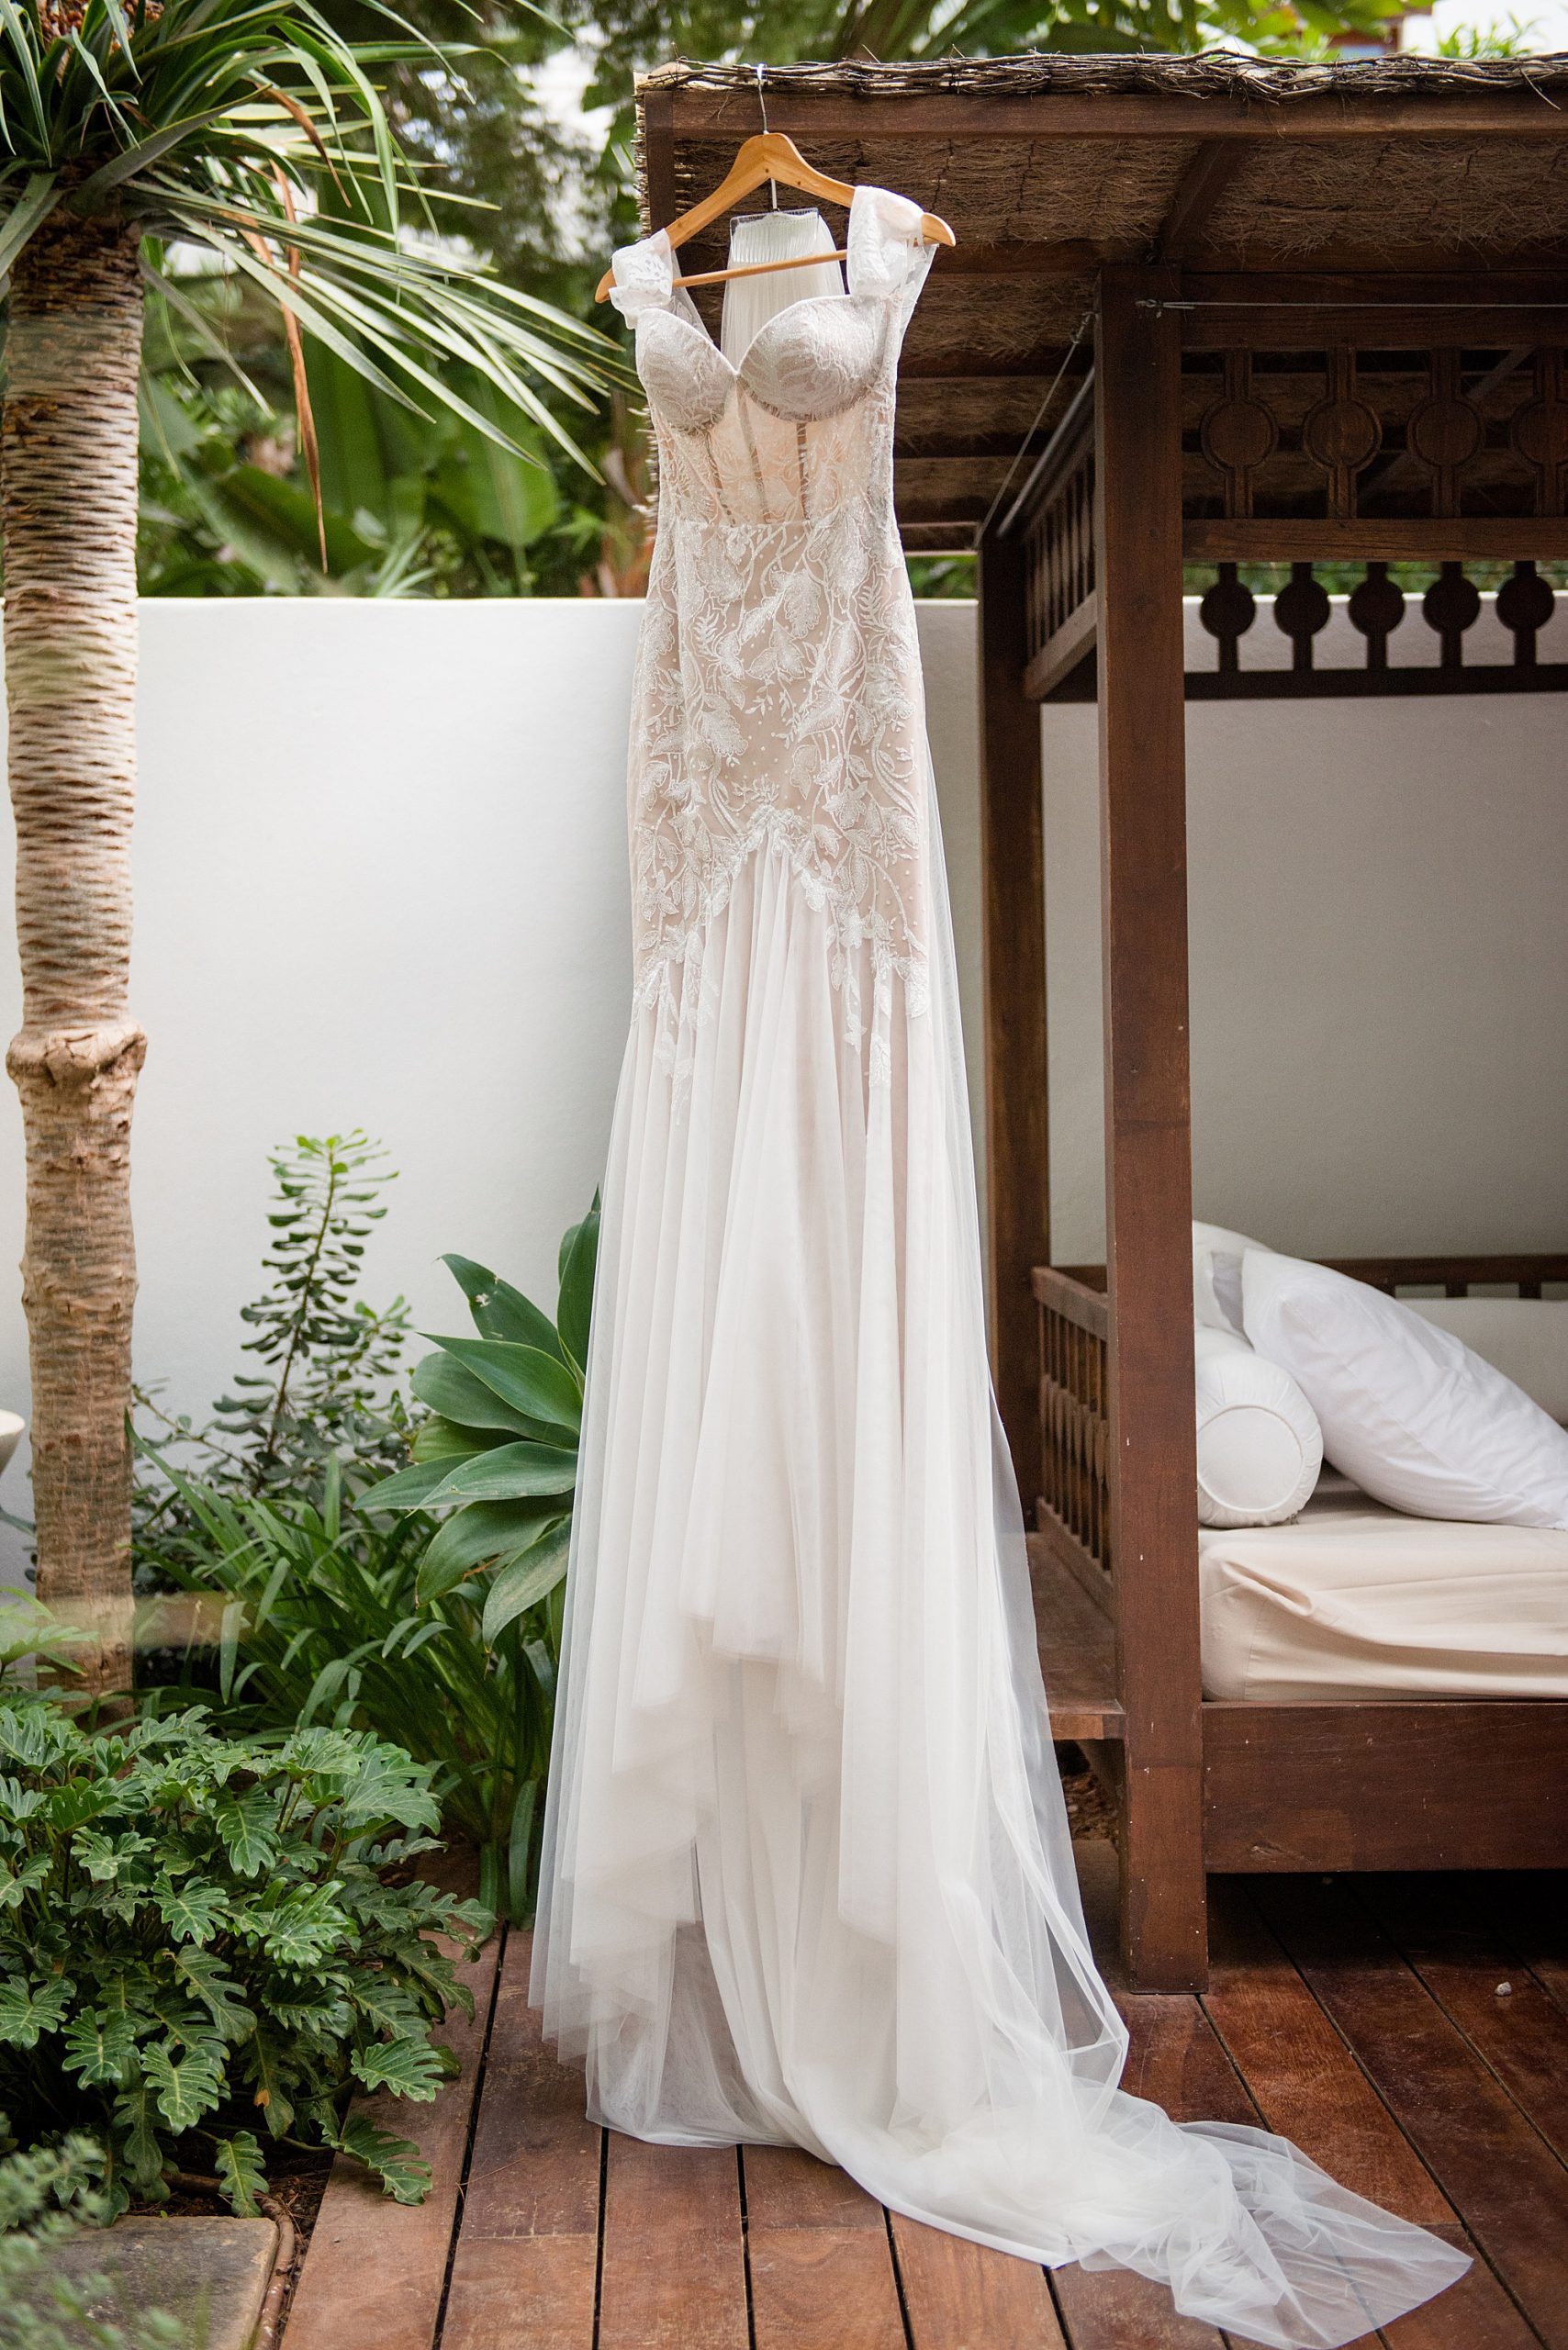 Ibiza Wedding Riki Dalal Dress 2 scaled